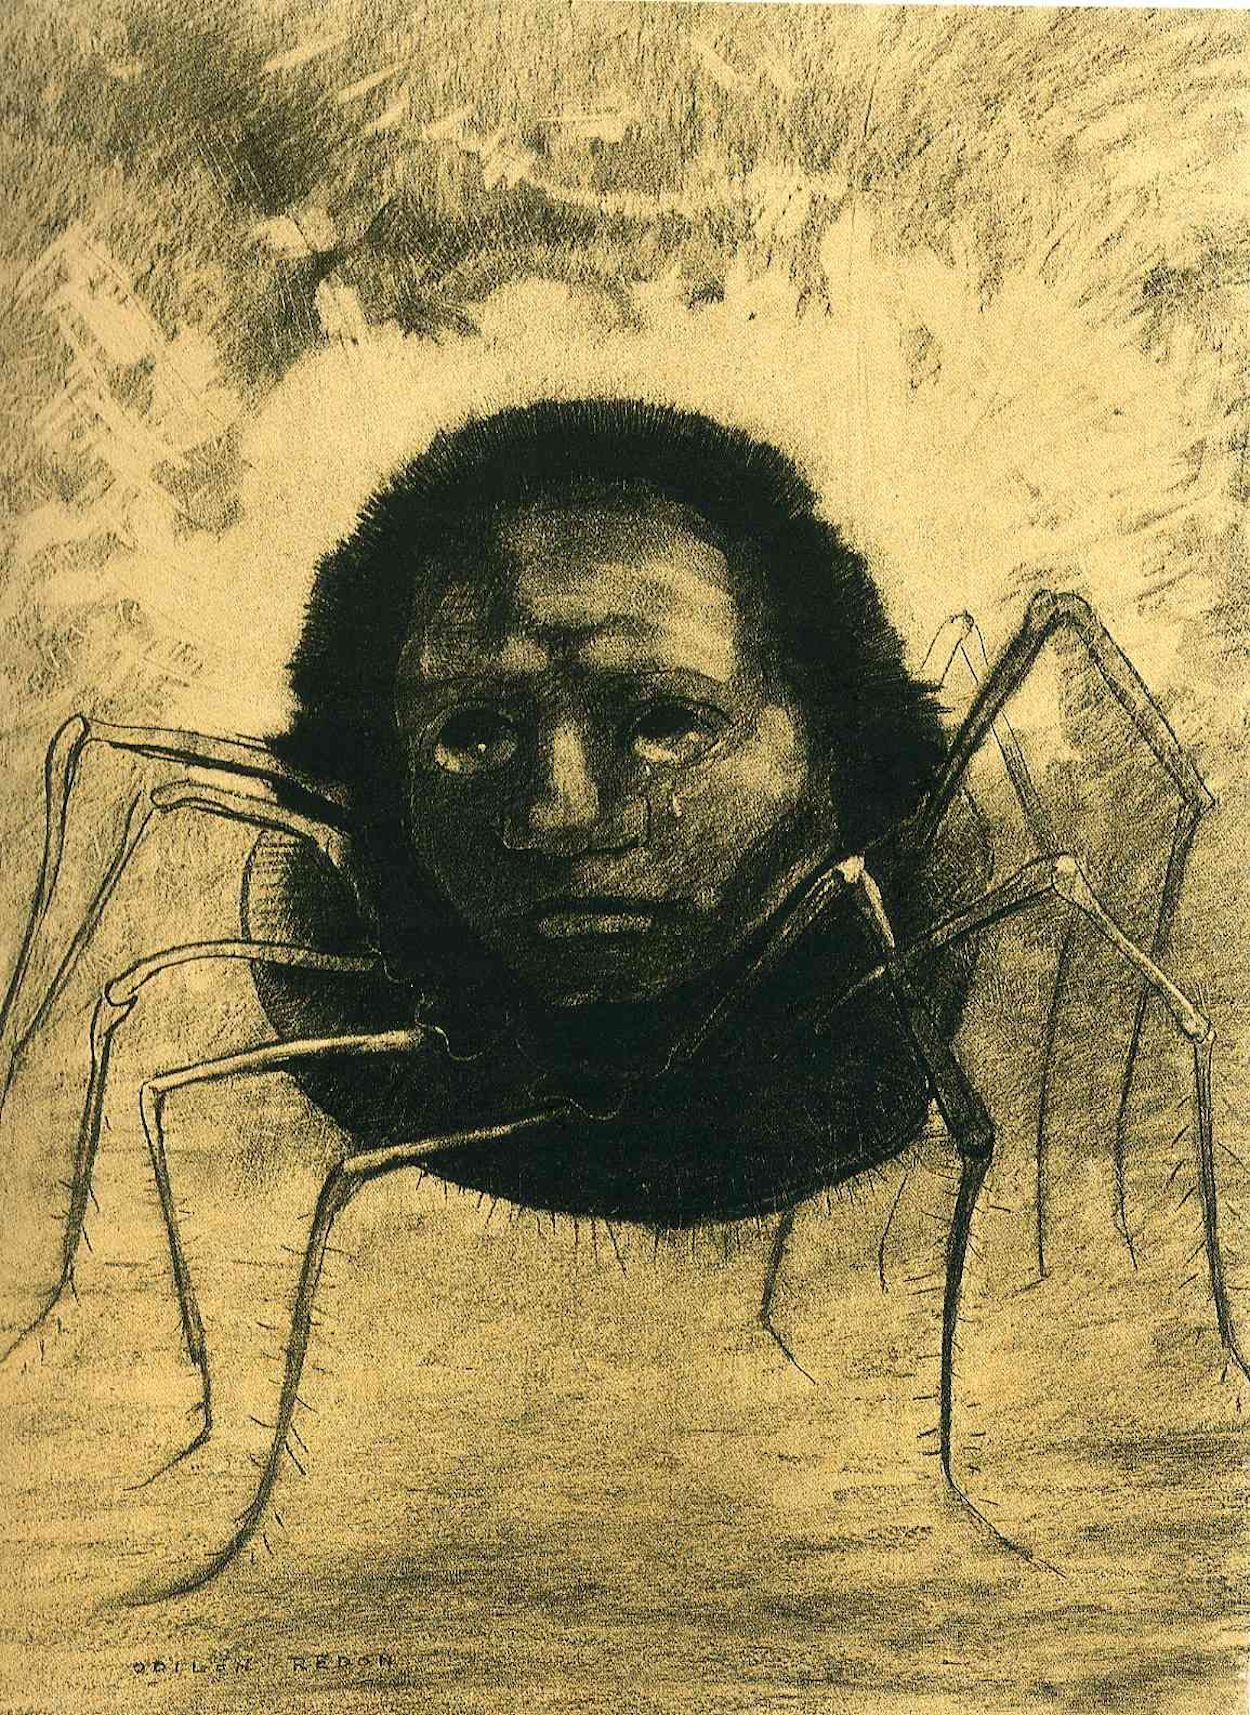 L'Araignée qui pleure by Odilon Redon - 1881 - 49 x 32.5 cm collection privée